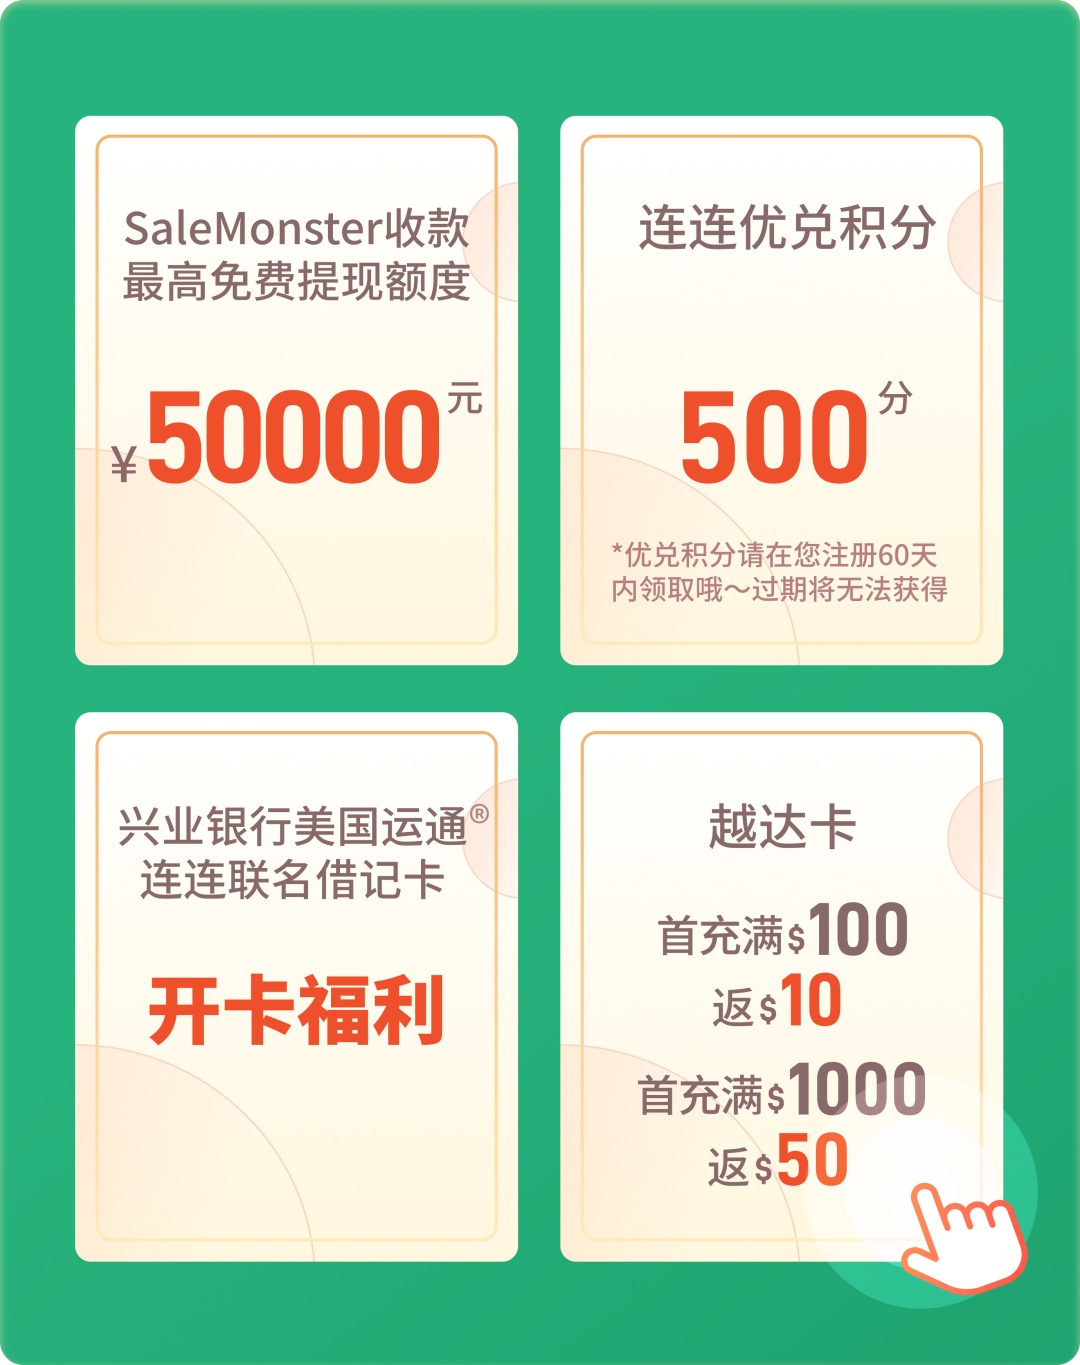 连连国际上线SaleMonster收款服务,助力日本卖家扩大市场